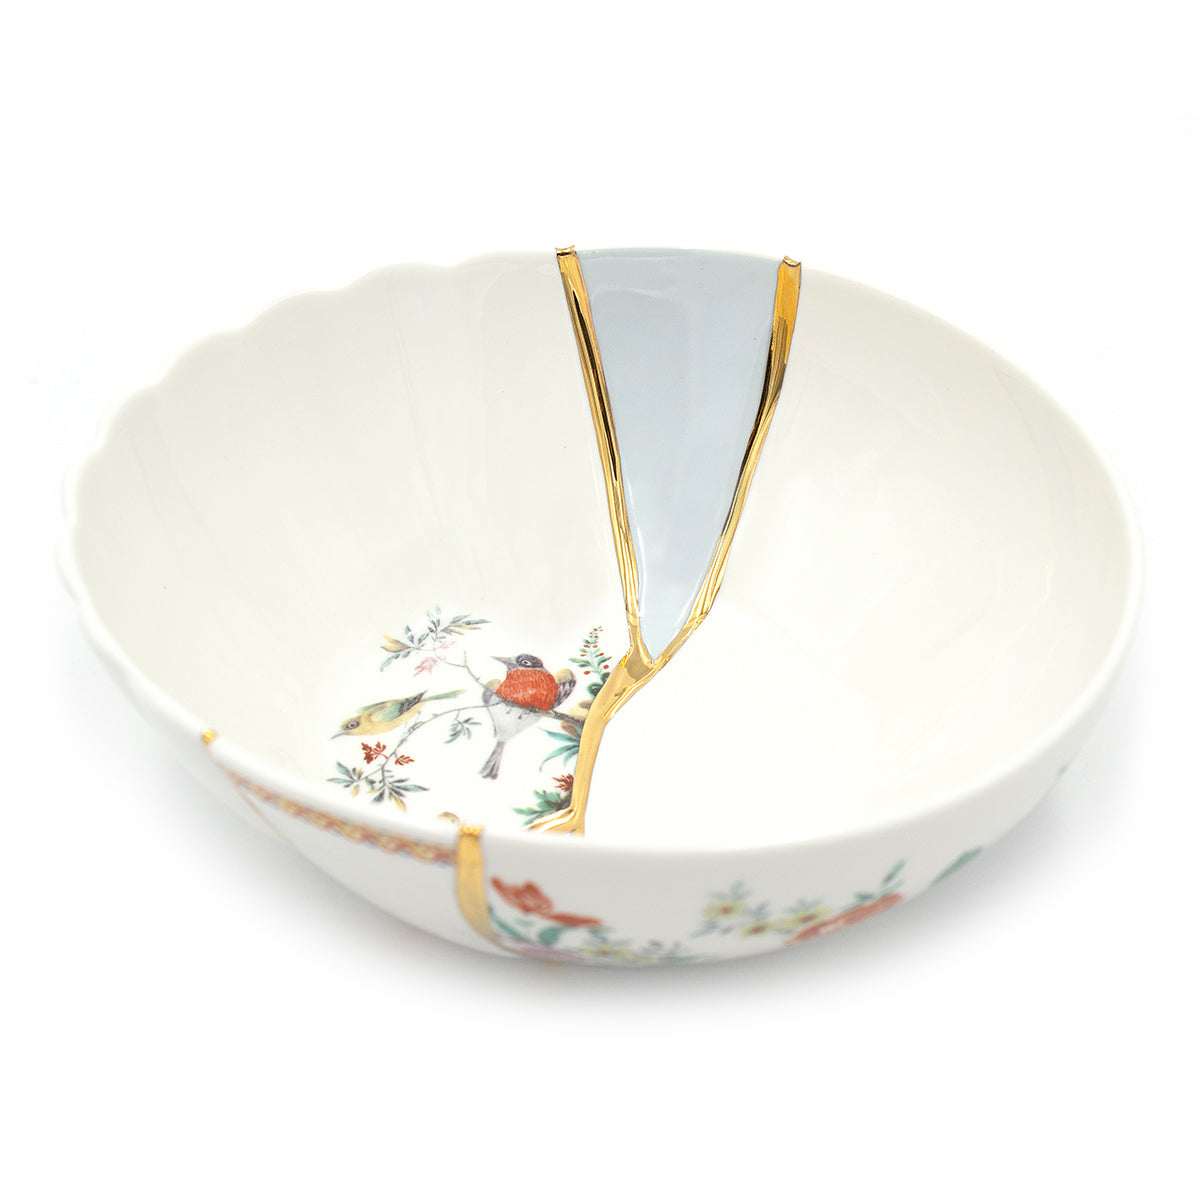 "KINTSUGI N'3" Bowl Plate in Porcelain Large